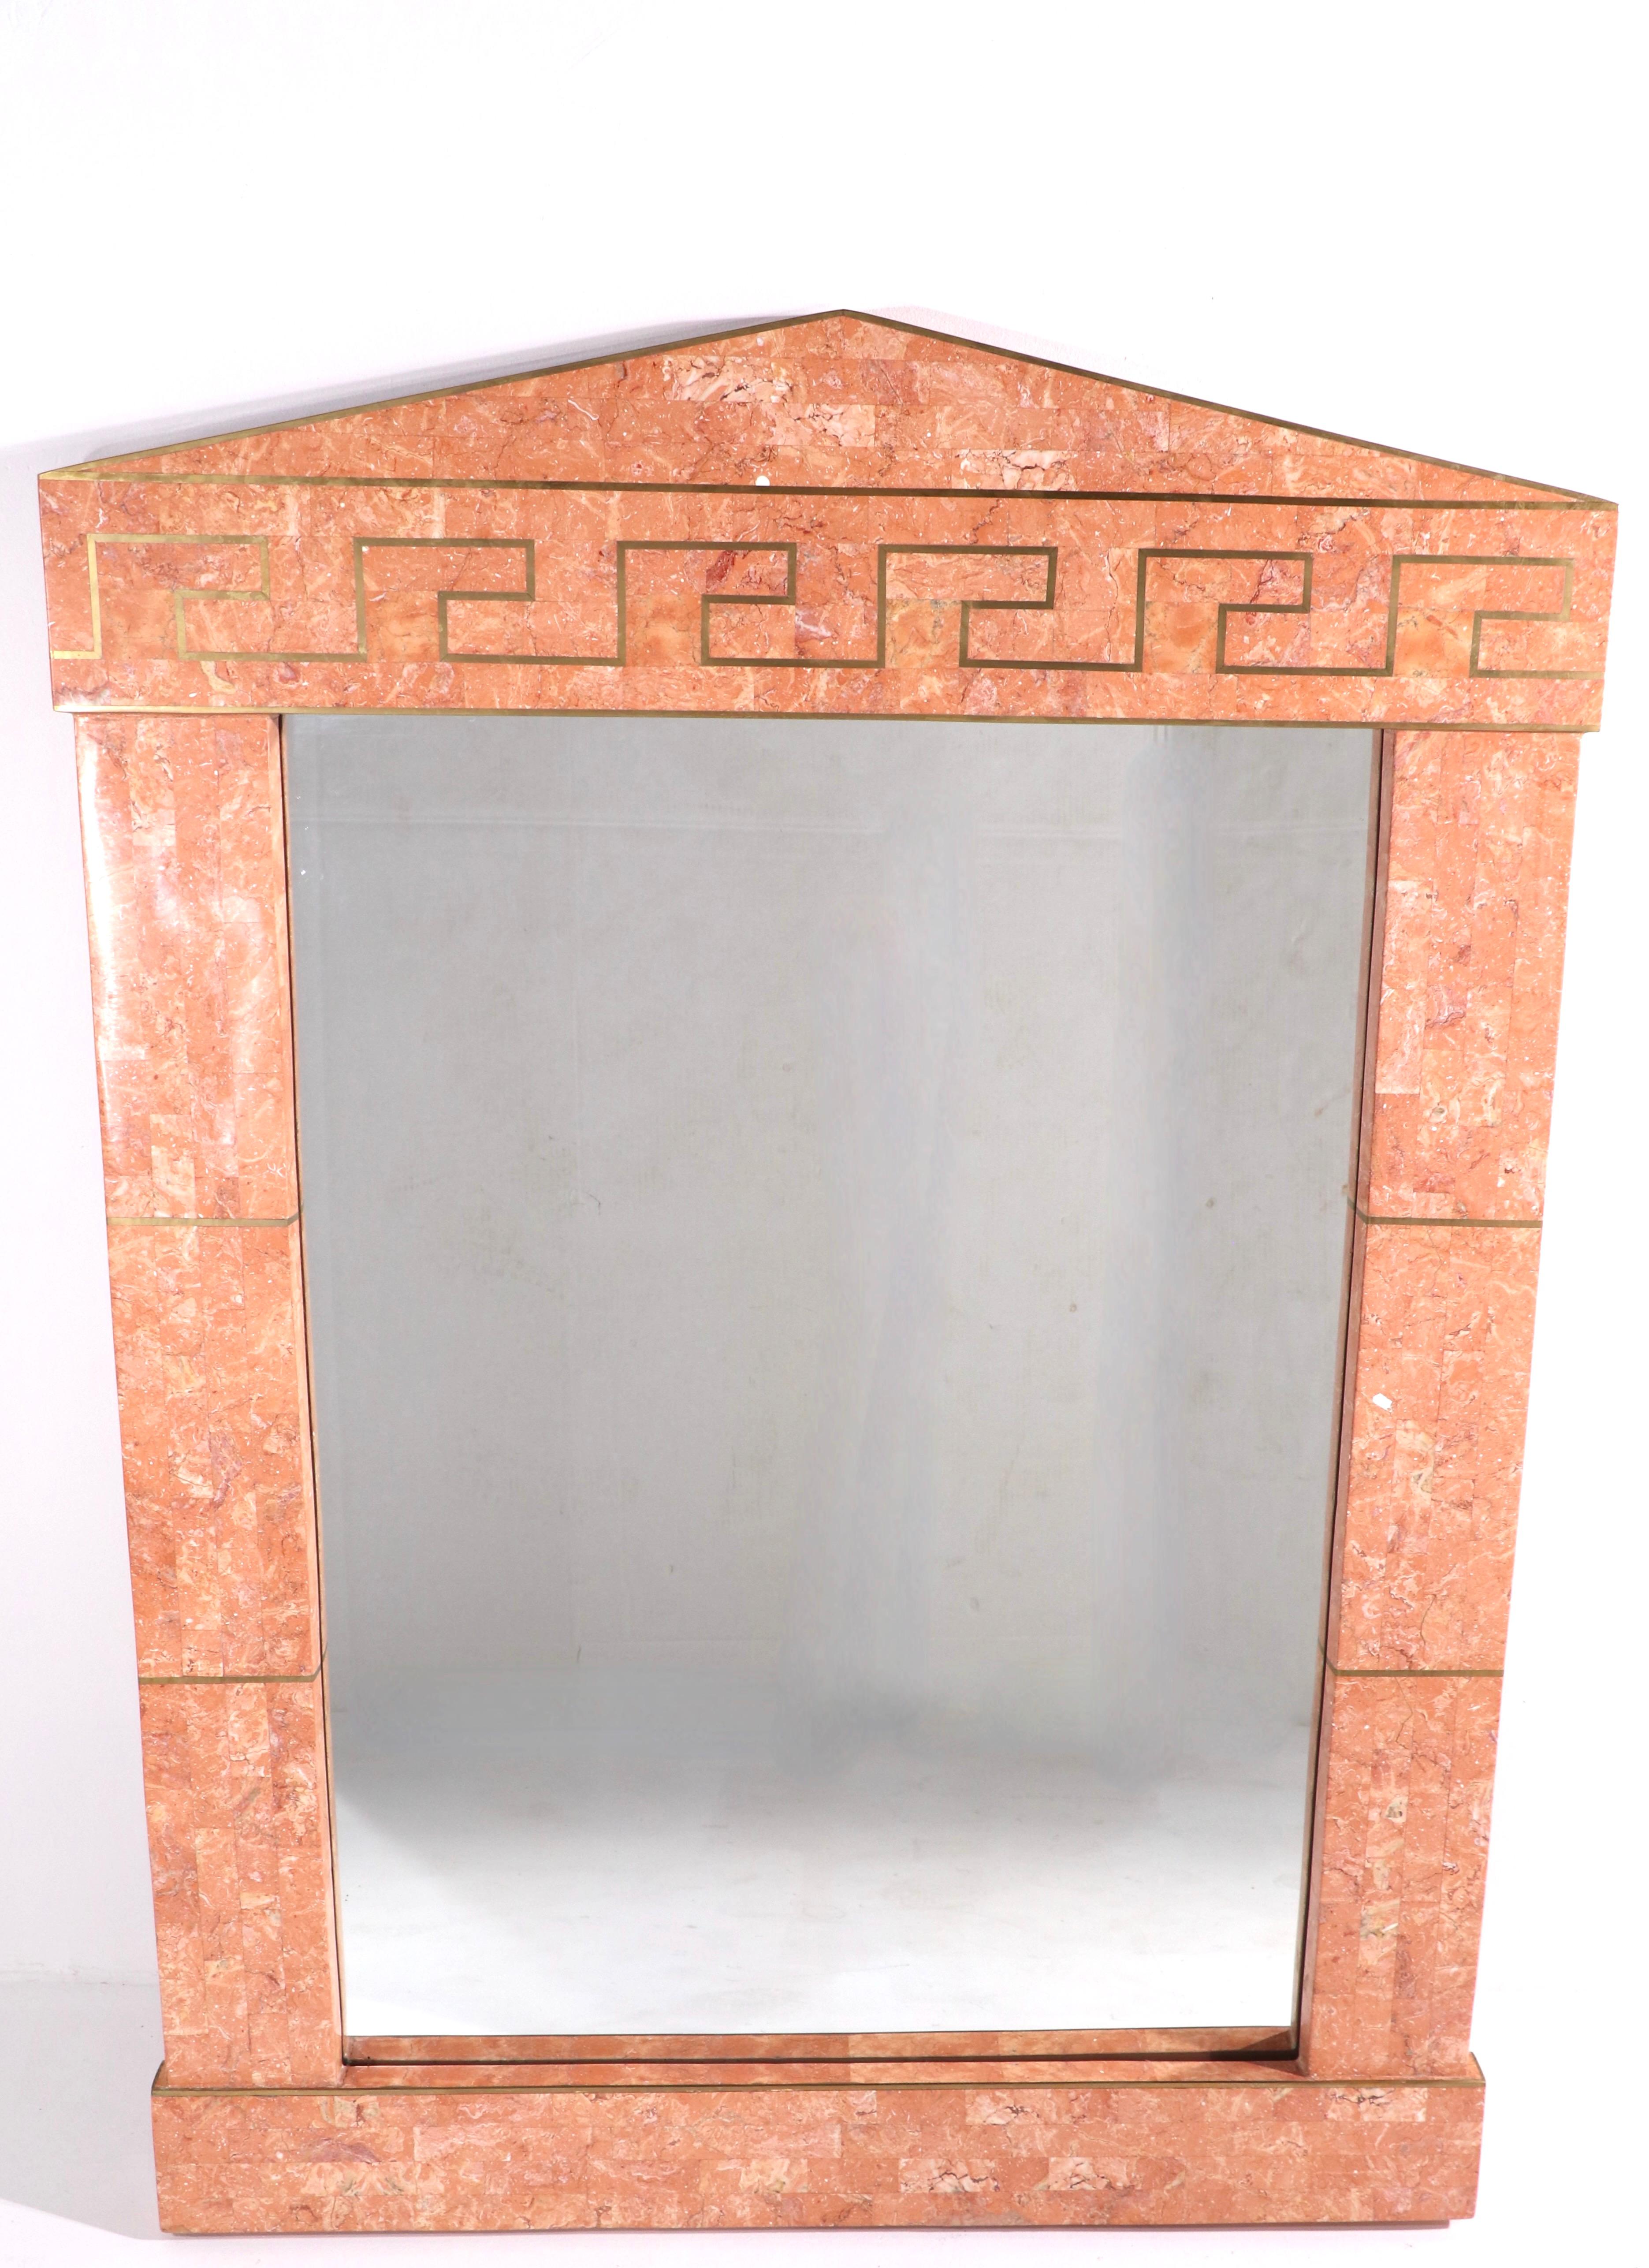 Stilvoller Spiegel mit Mosaikstein und Messingschnur von Maitland Smith. Der Rahmen hat eine architektonische Spitze über einem rechteckigen Einsetzspiegel. Es ist in einem sehr guten, originalen, sauberen und einbaufertigen Zustand - dieses schicke